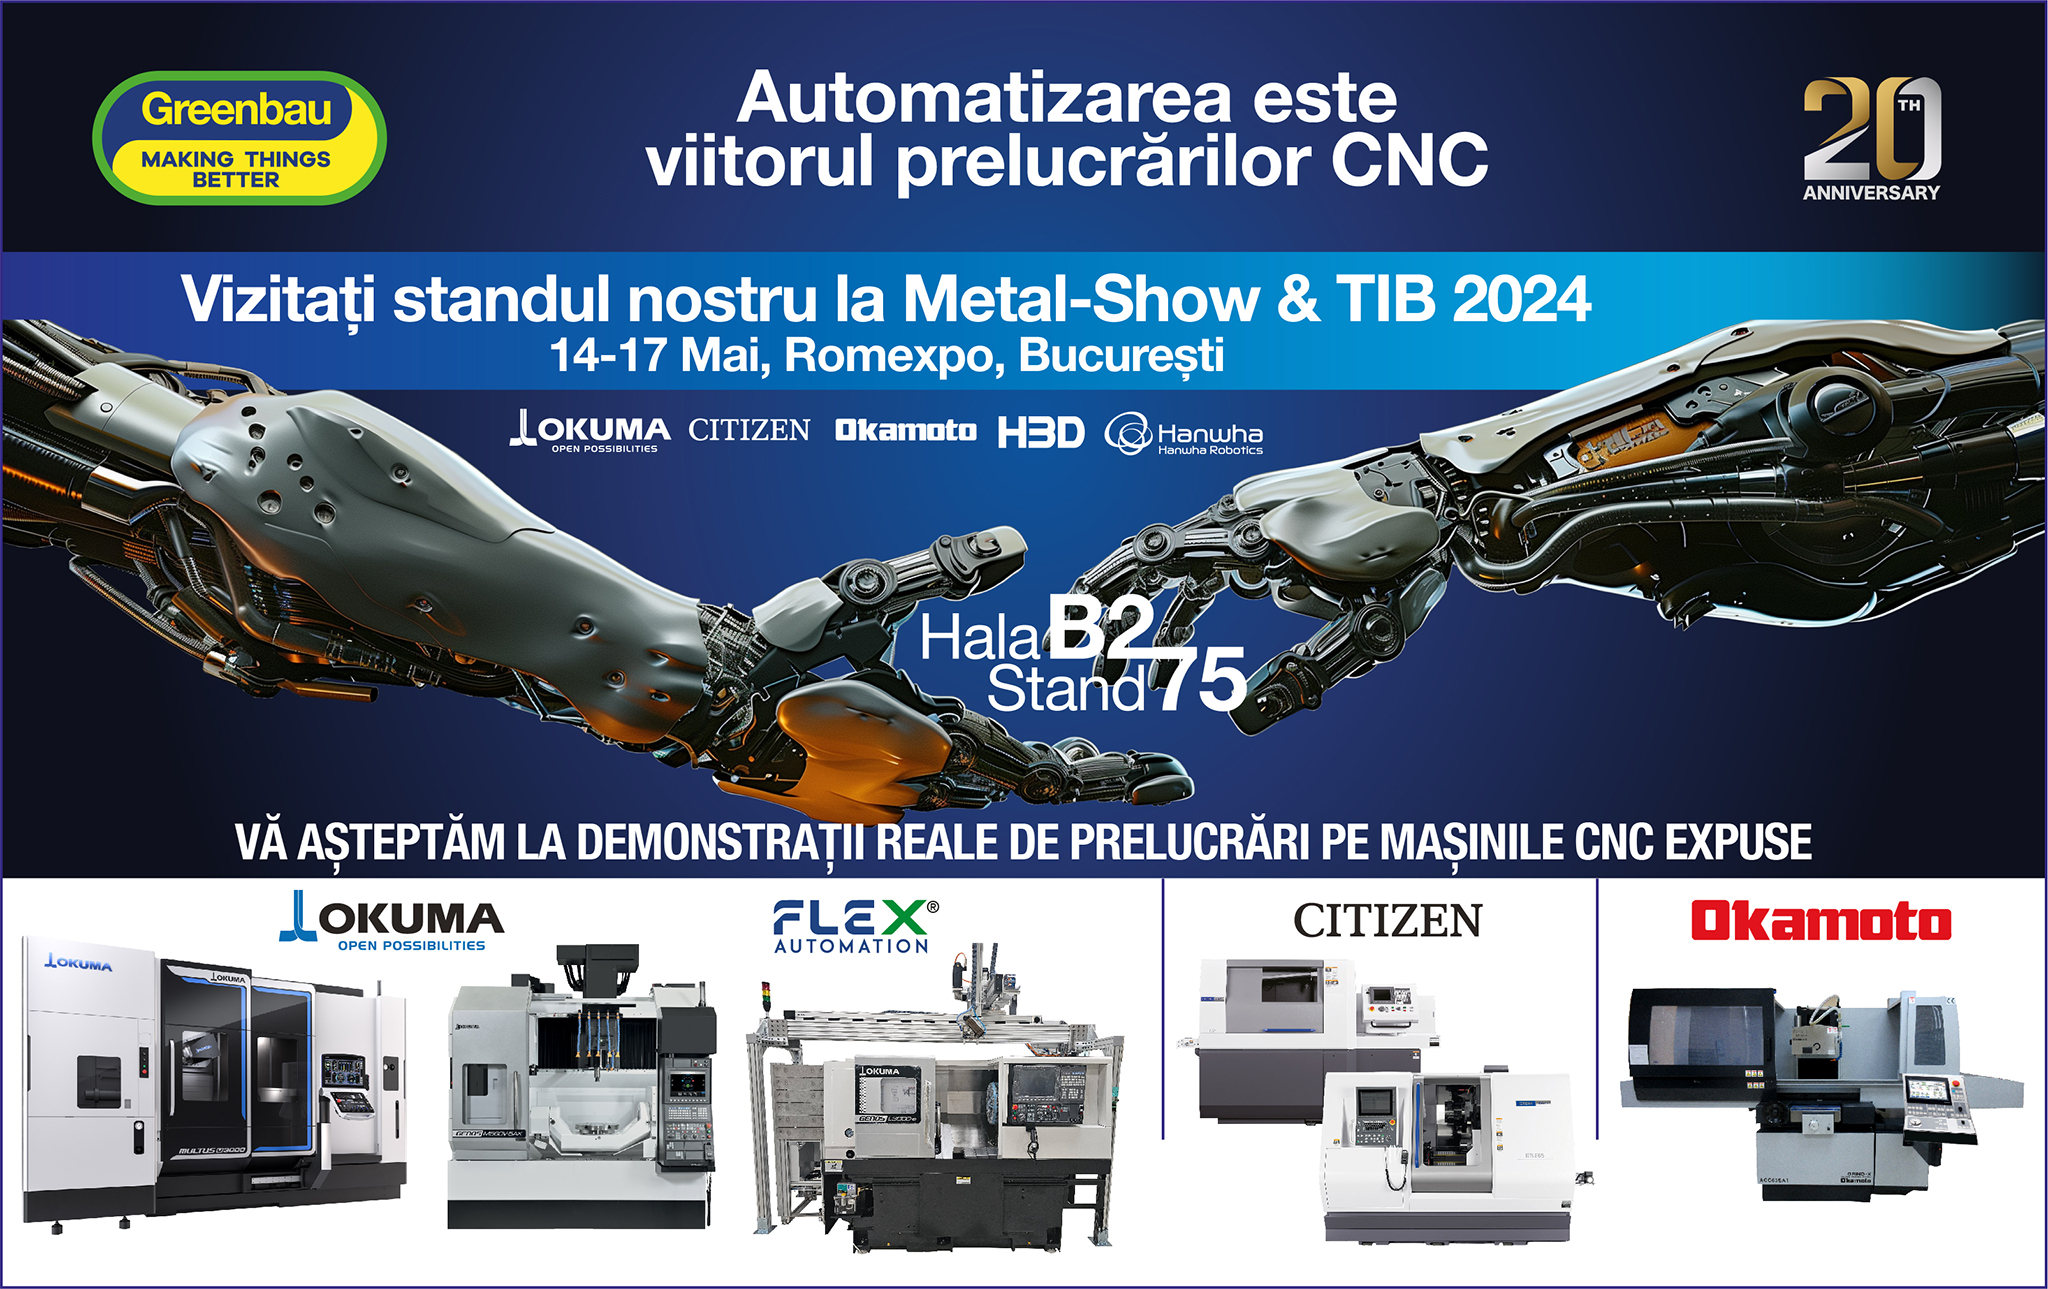 INVITATIE Greenbau la MetalShow & TIB 2024